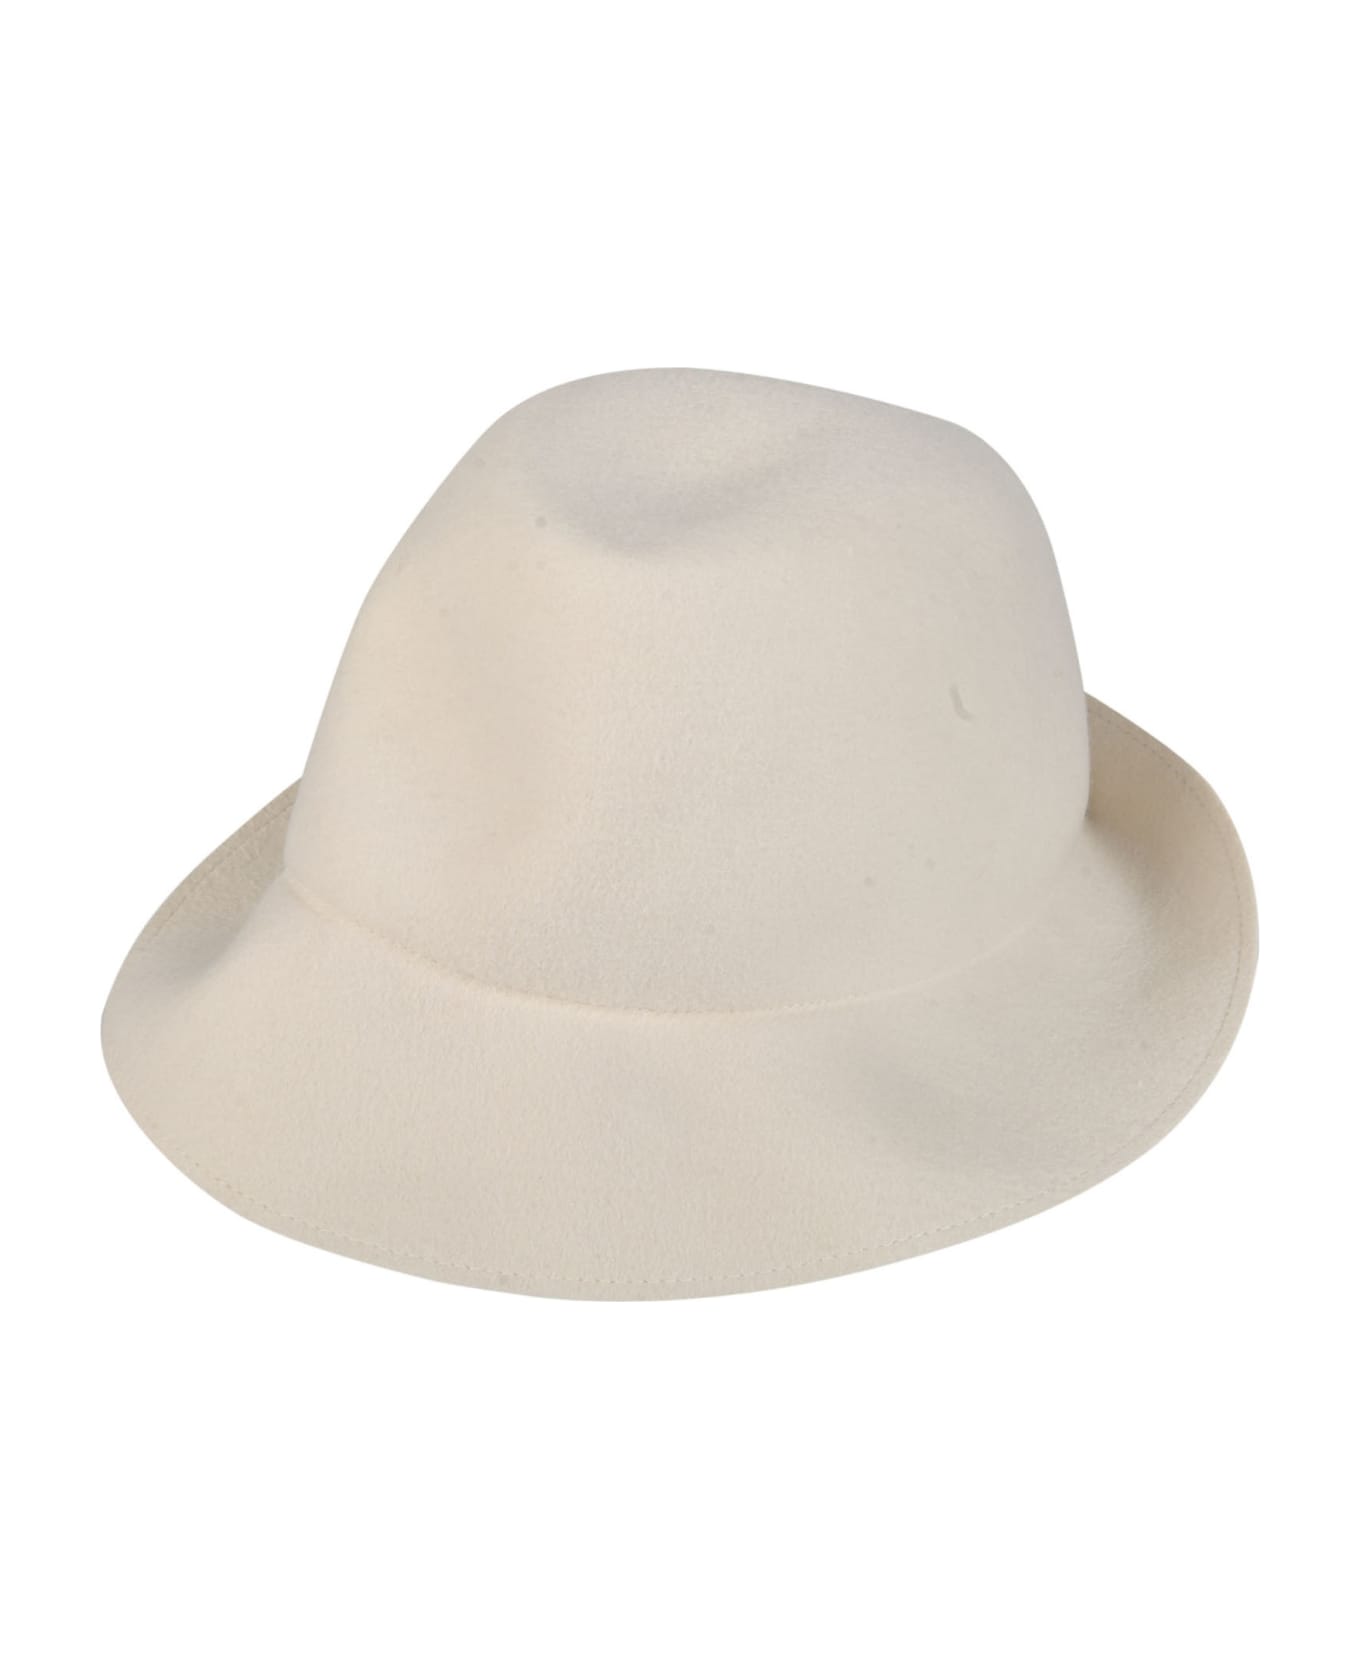 Comme des Garçons Shirt Classic Round Hat - White